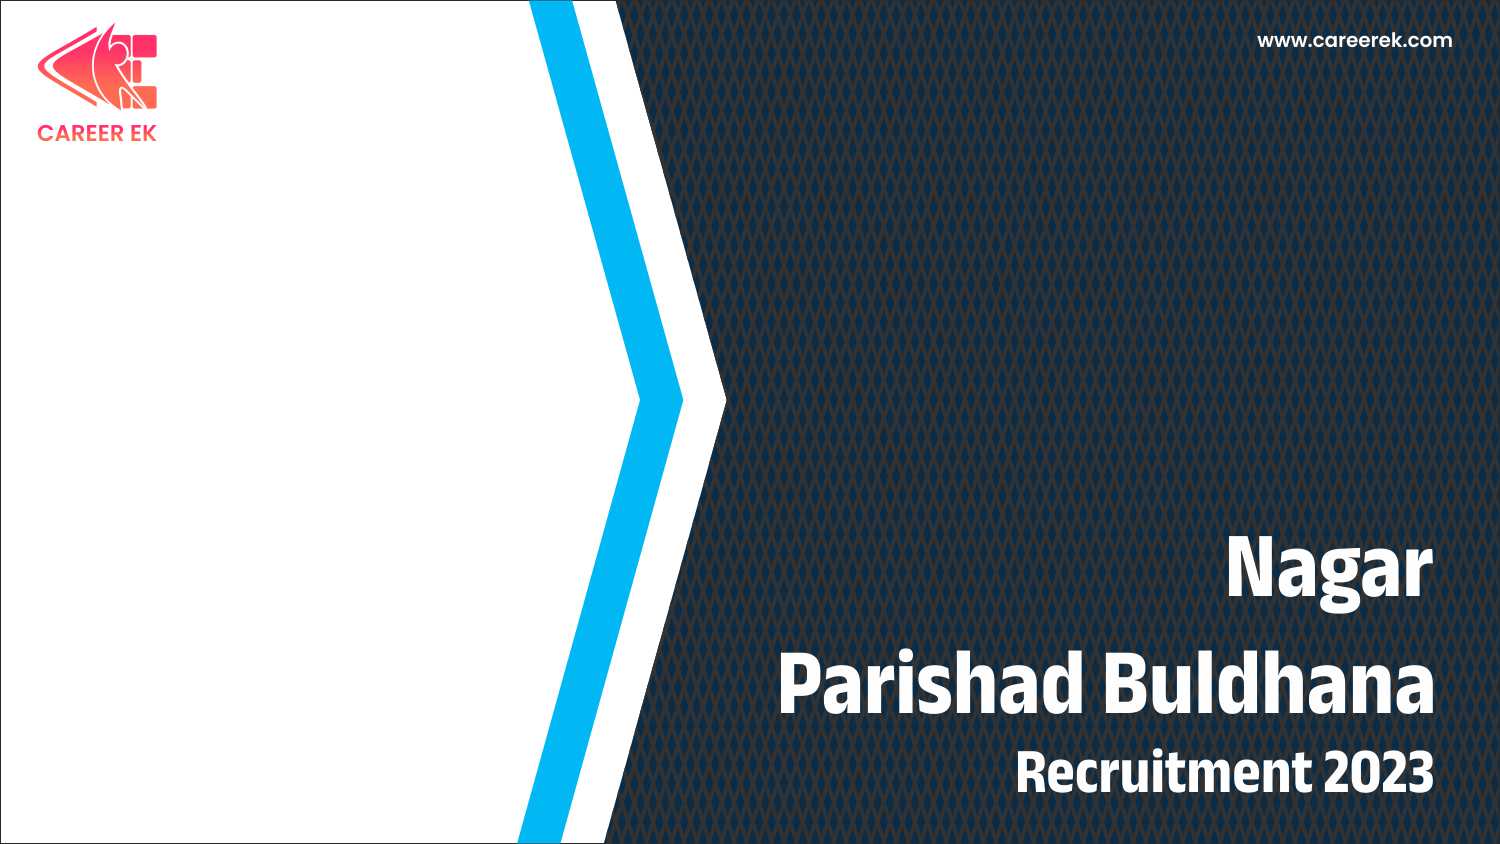 Nagar Parishad Buldhana Recruitment 2023 CareerEk